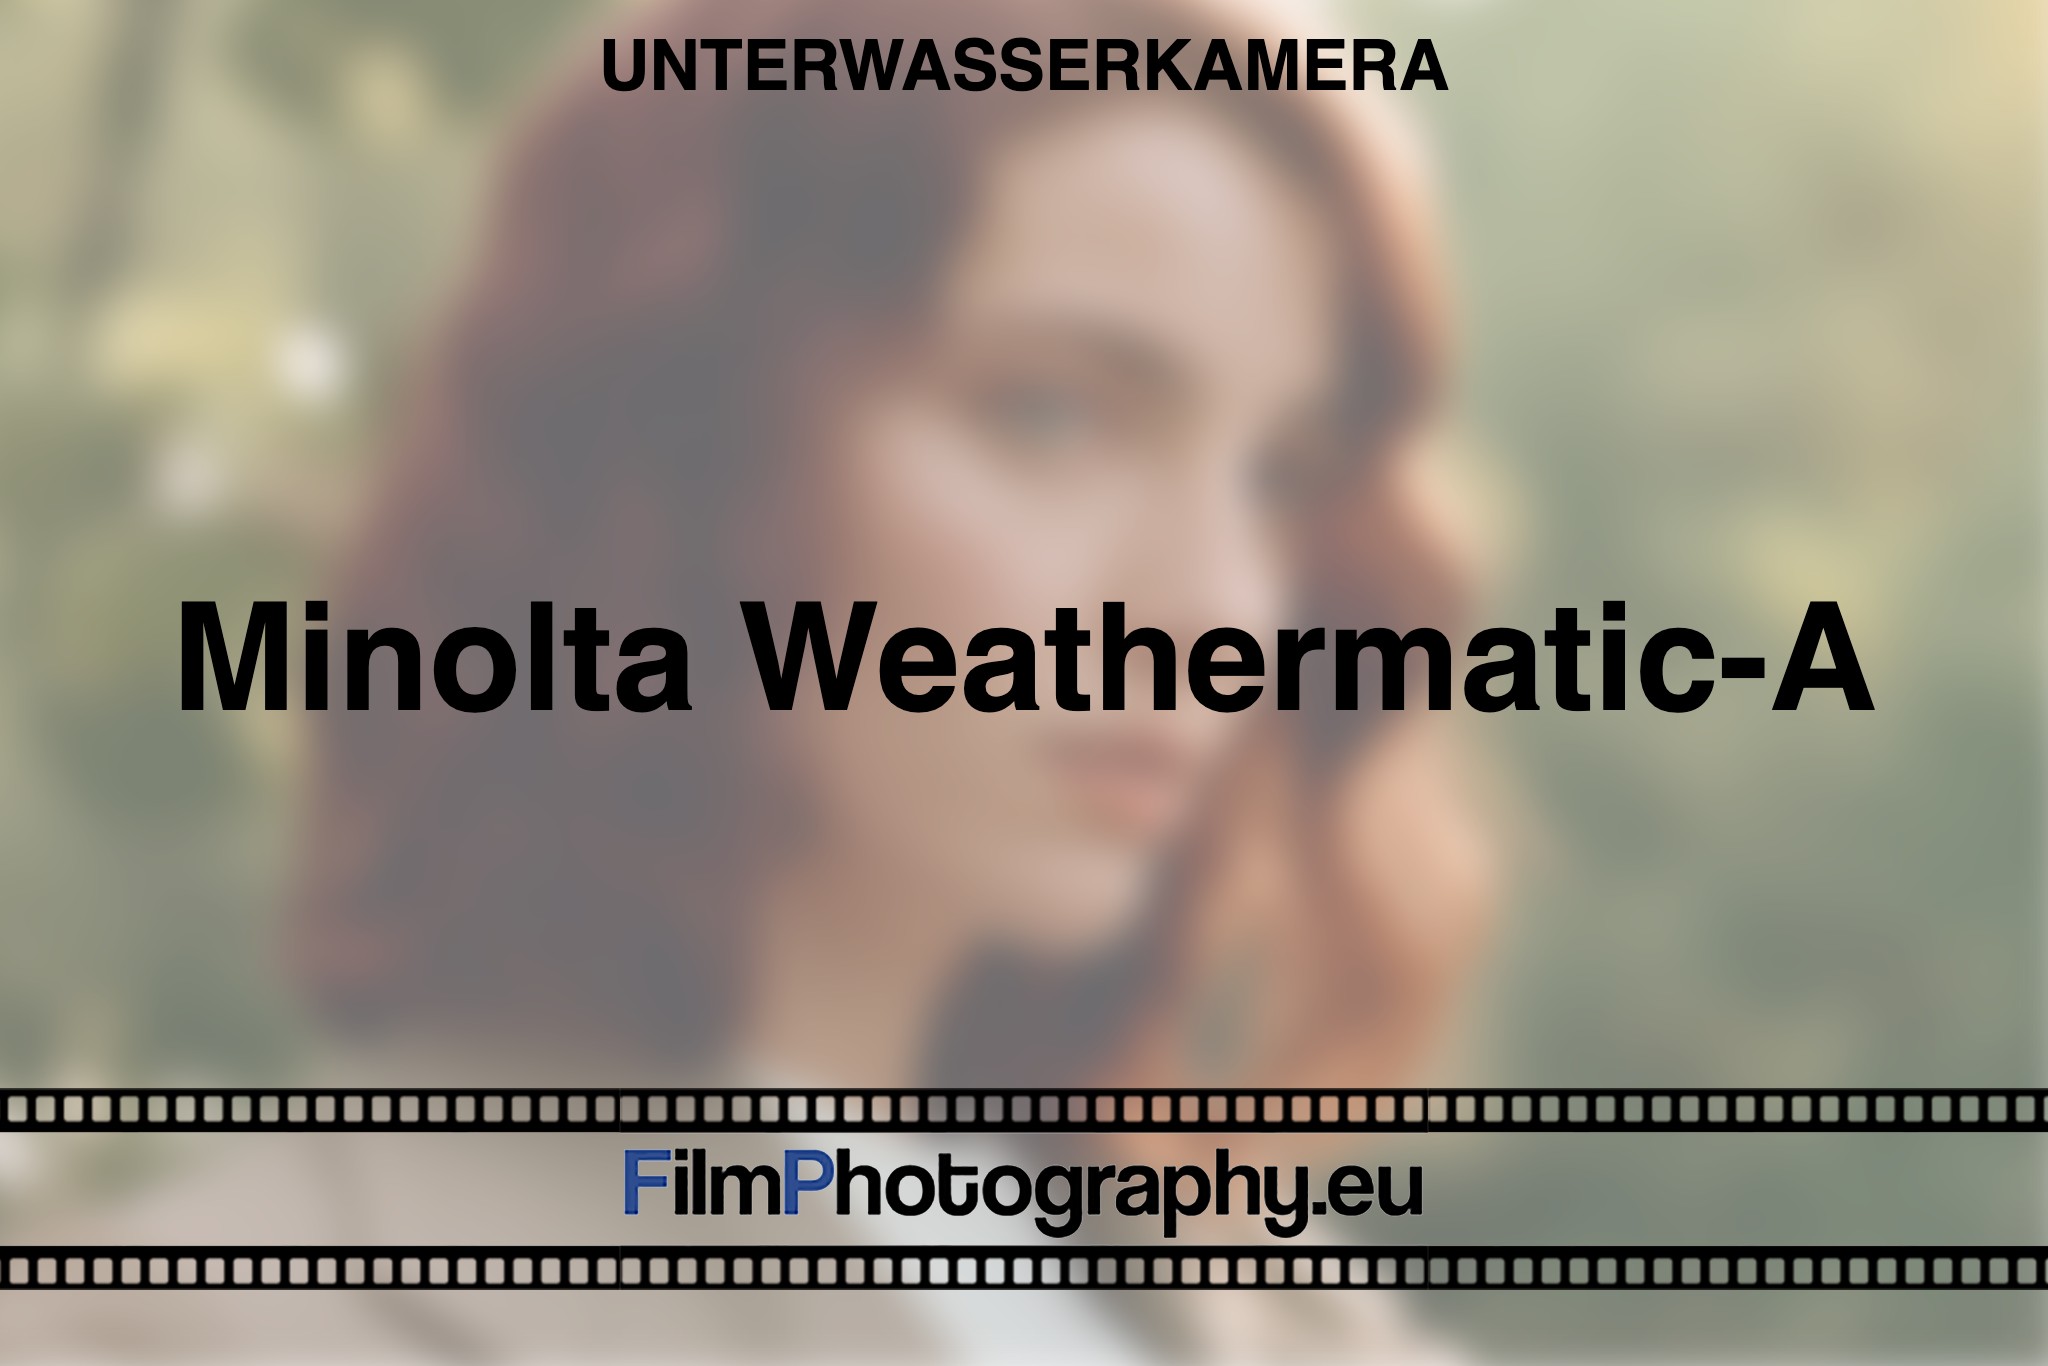 minolta-weathermatic-a-unterwasserkamera-bnv